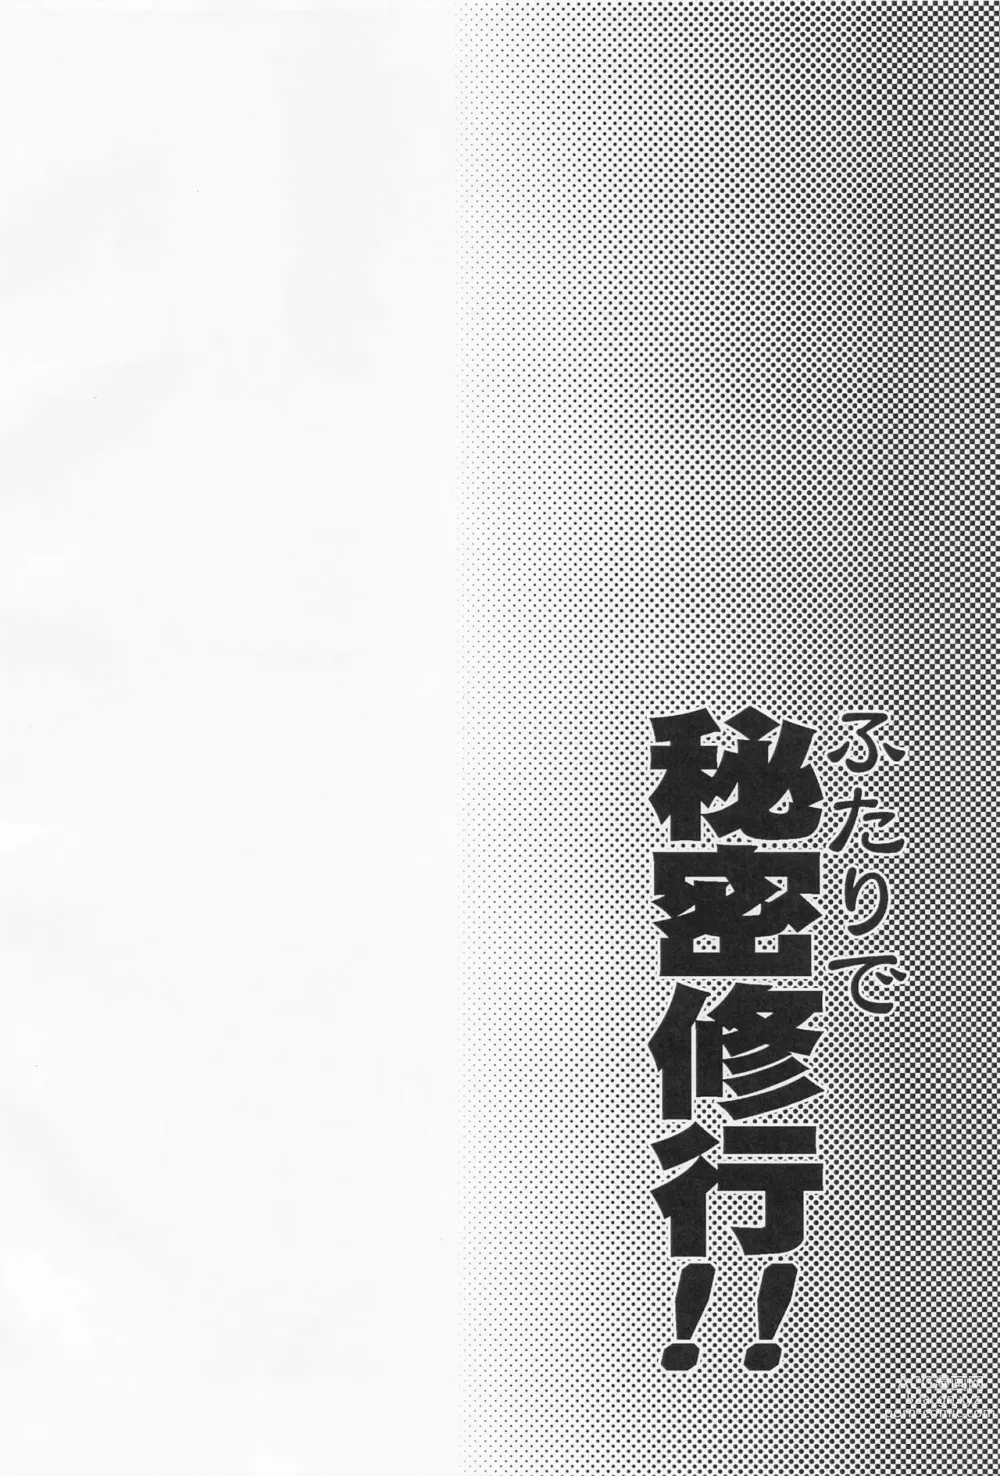 Page 3 of doujinshi Futari de Himitsu Shugyou!!